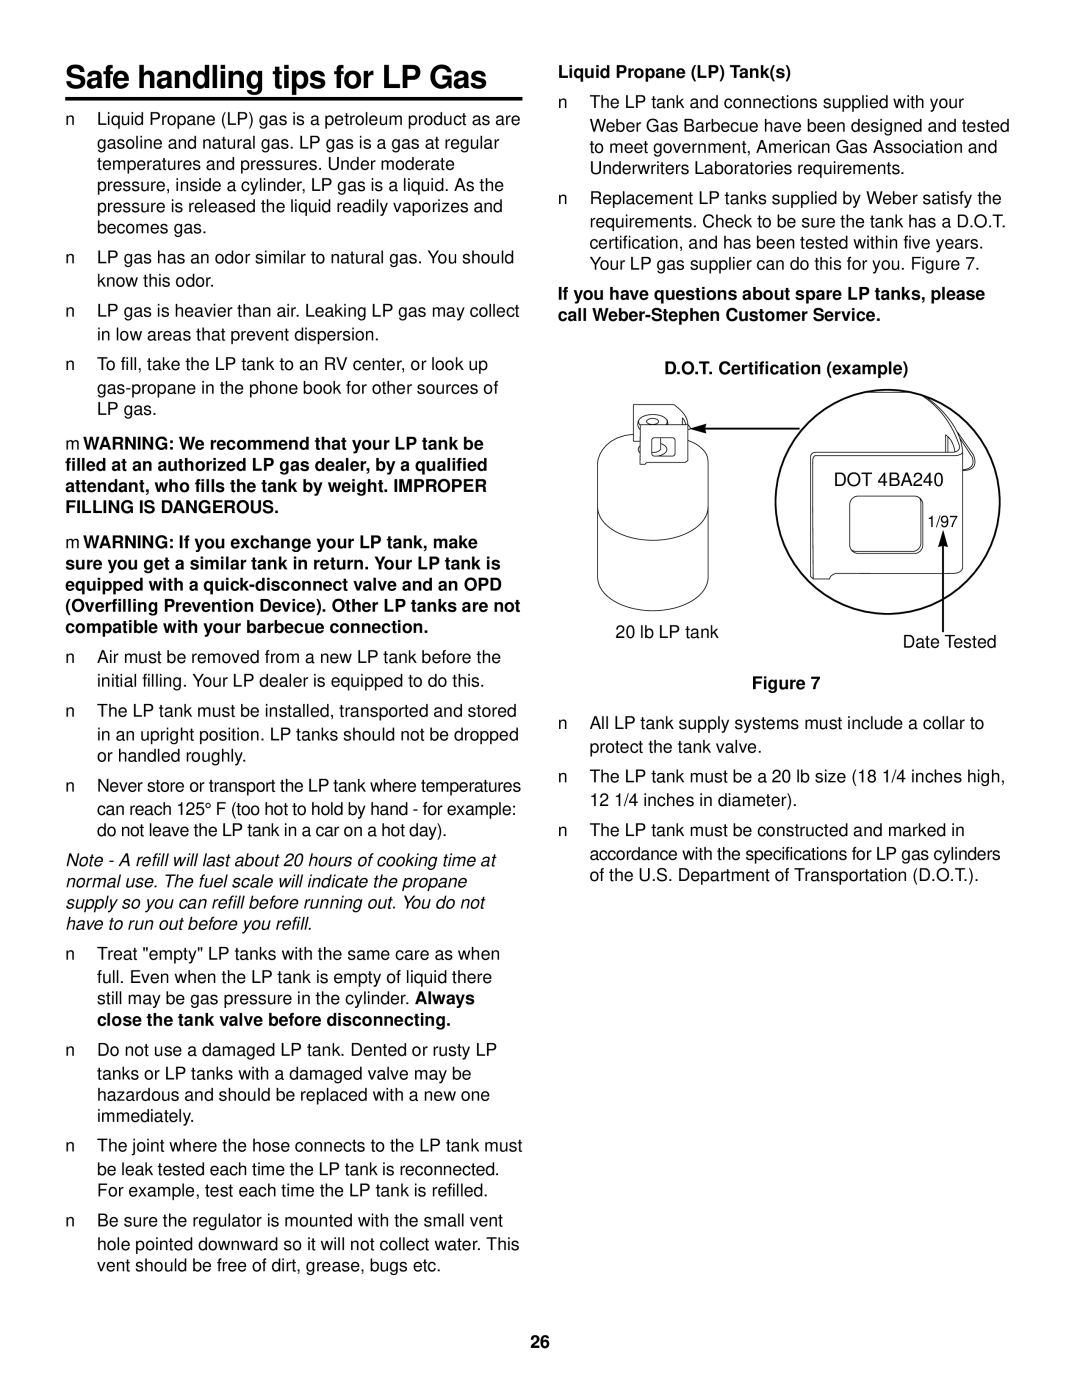 Weber 500 LX Series owner manual Safe handling tips for LP Gas, DOT 4BA240 